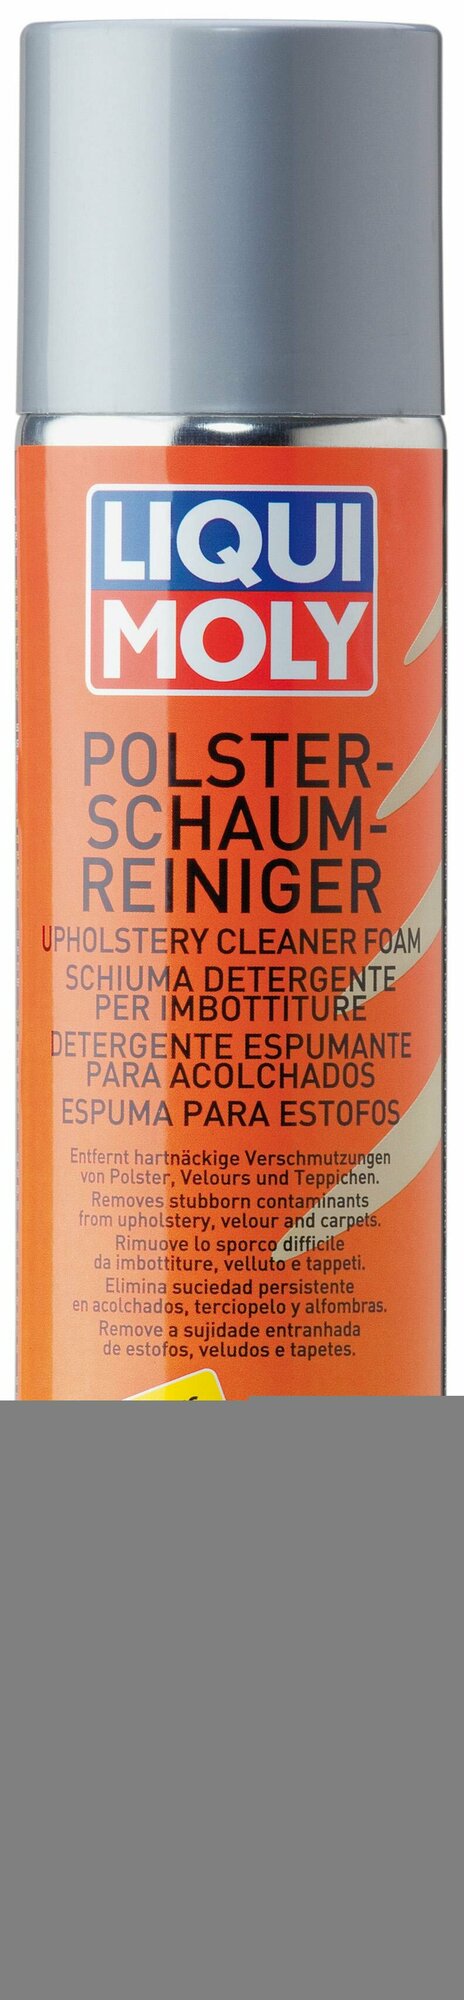 Замена 7586 Пена Для Очистки Салона Polster-Schaum-Reiniger 0300Л Liqui moly арт. 1539